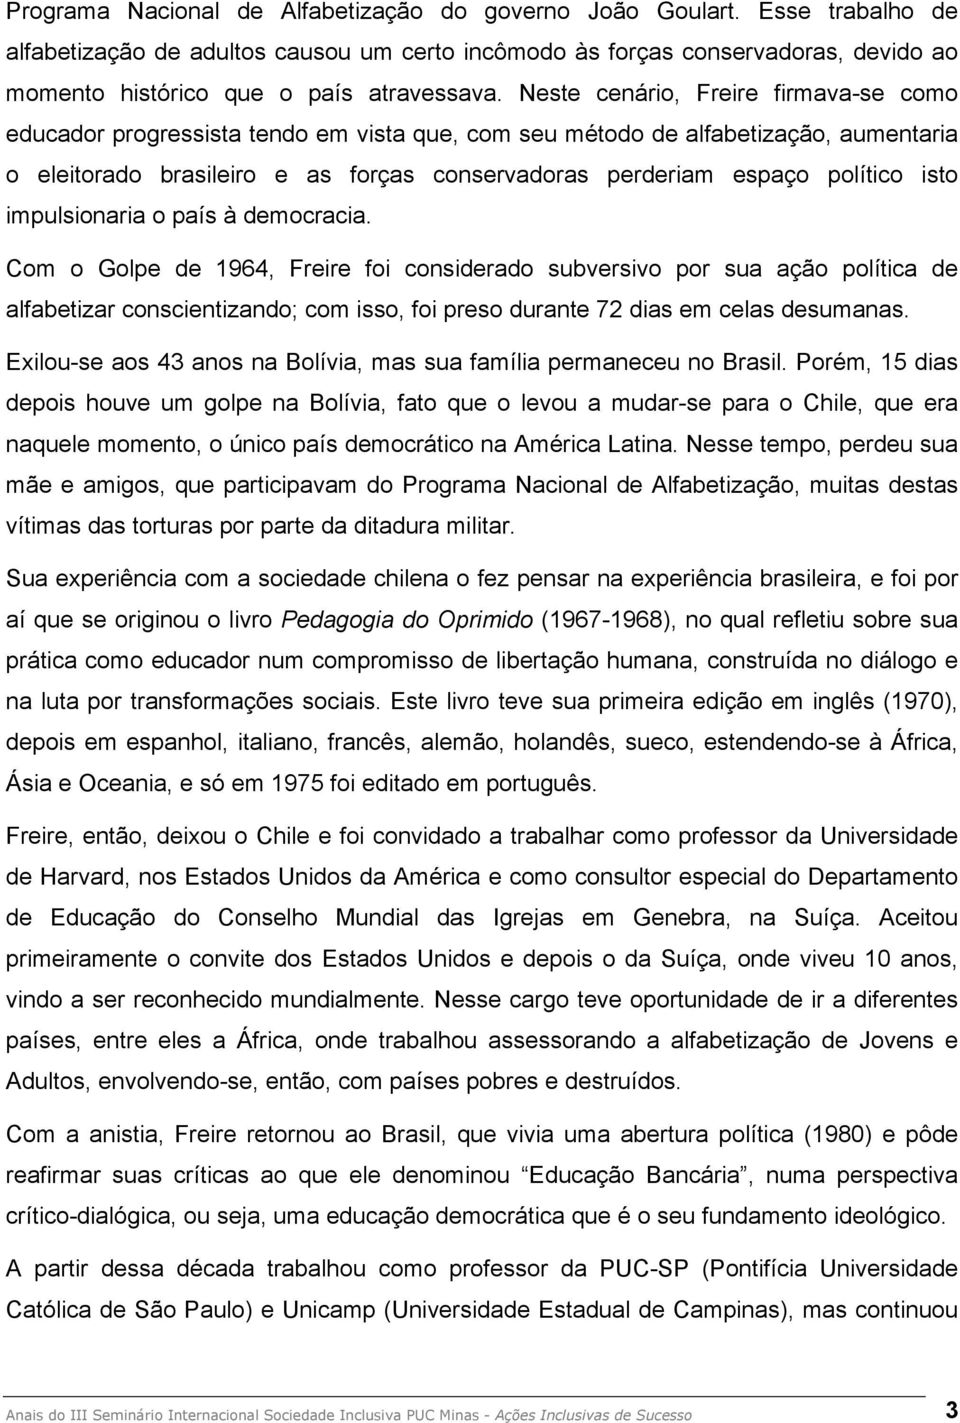 Neste cenário, Freire firmava-se como educador progressista tendo em vista que, com seu método de alfabetização, aumentaria o eleitorado brasileiro e as forças conservadoras perderiam espaço político